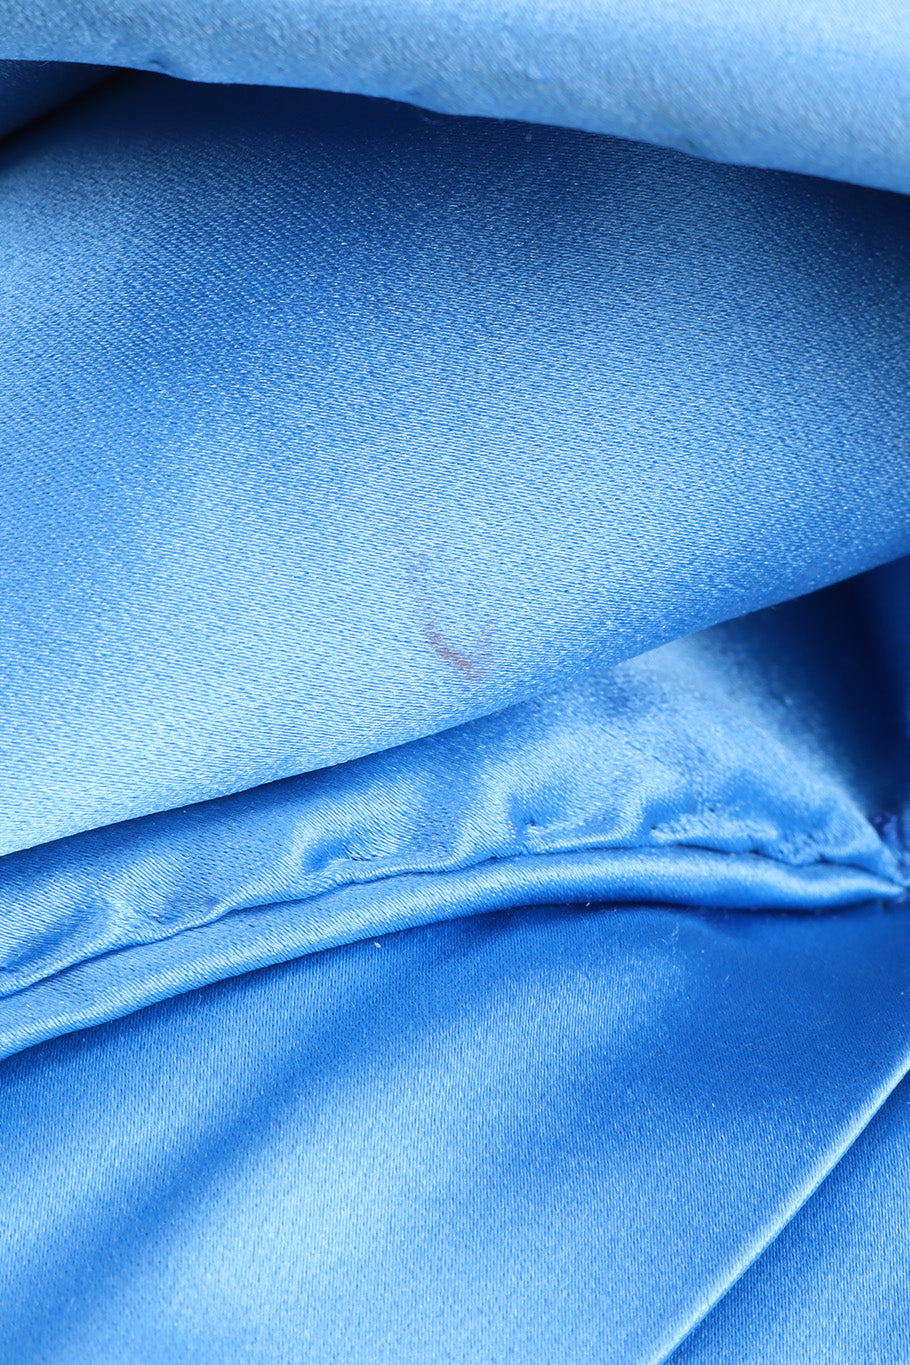 Vintage Jacqueline de Ribes Silk Shoulder Wrap Gown small stain closeup @recessla